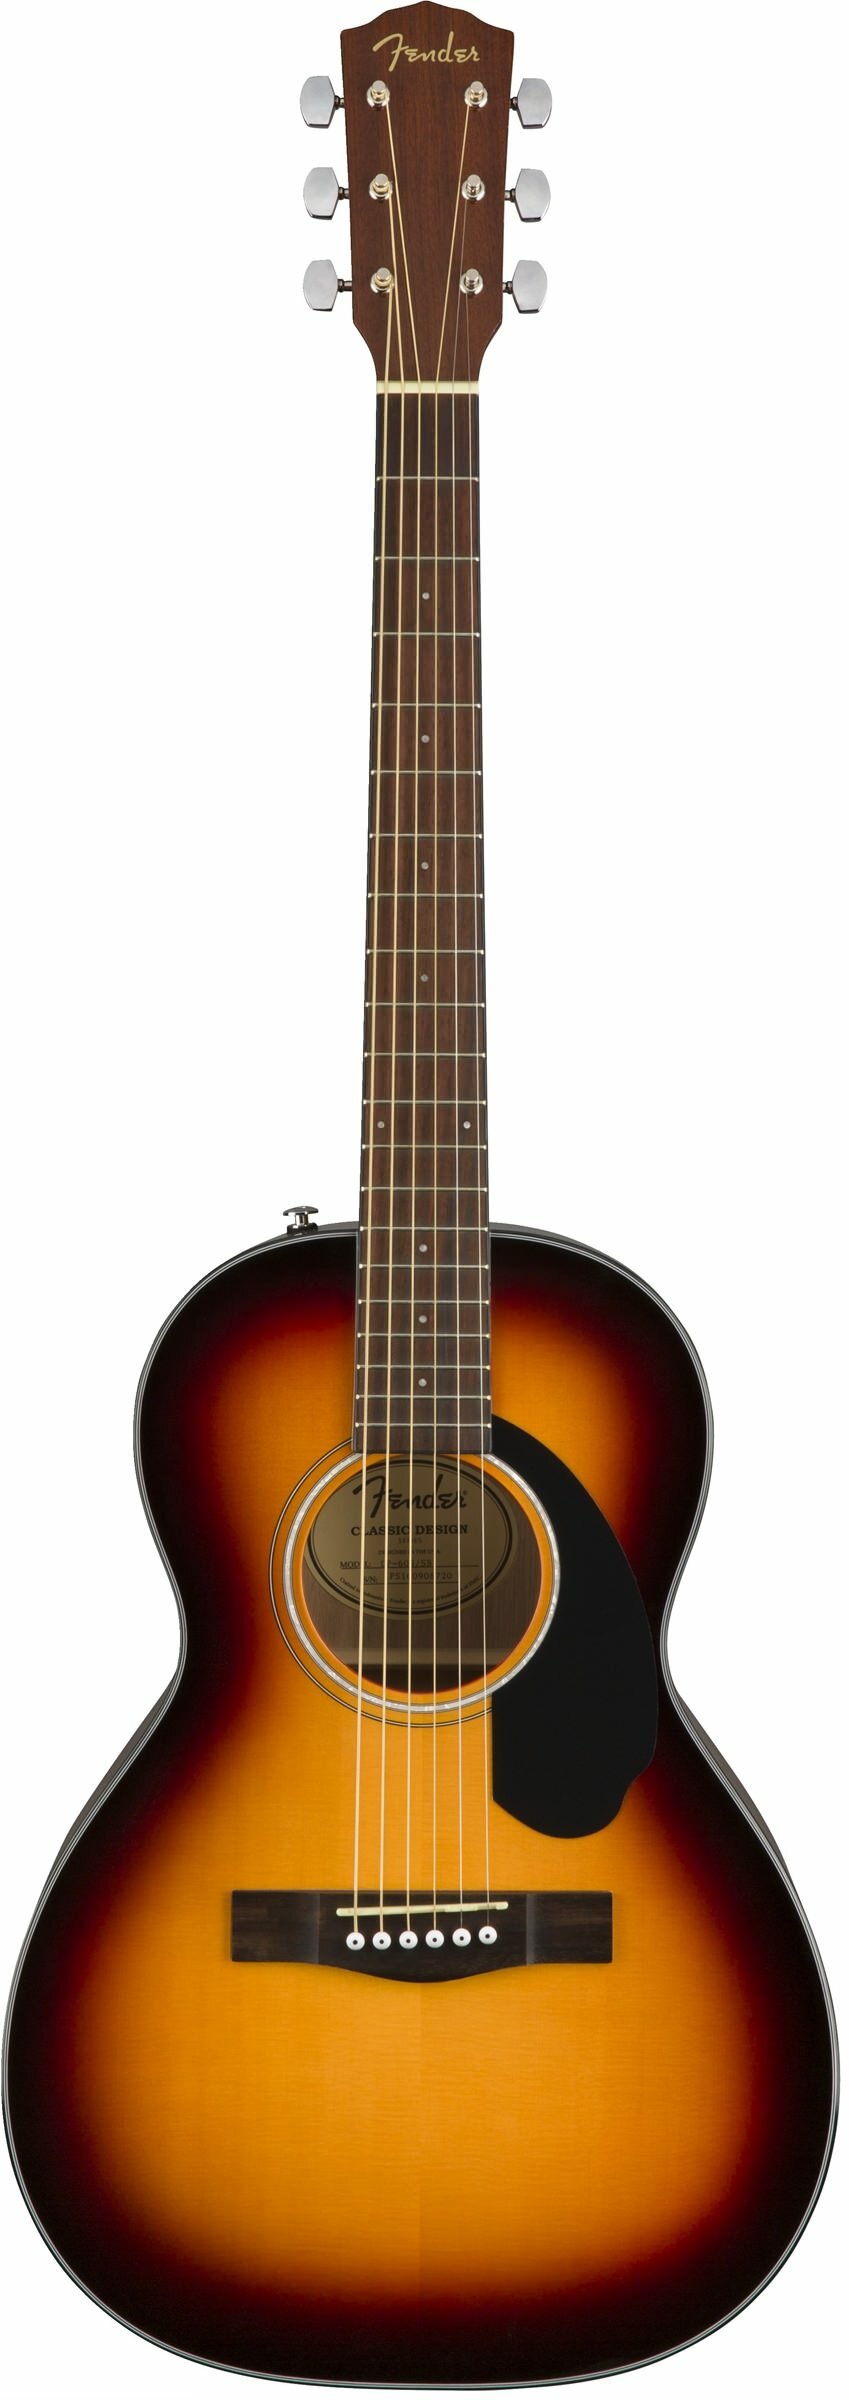 FENDER CP-60S Parlor Sunburst WN Акустическая гитара парлор топ массив ели накладка орех цвет санберст